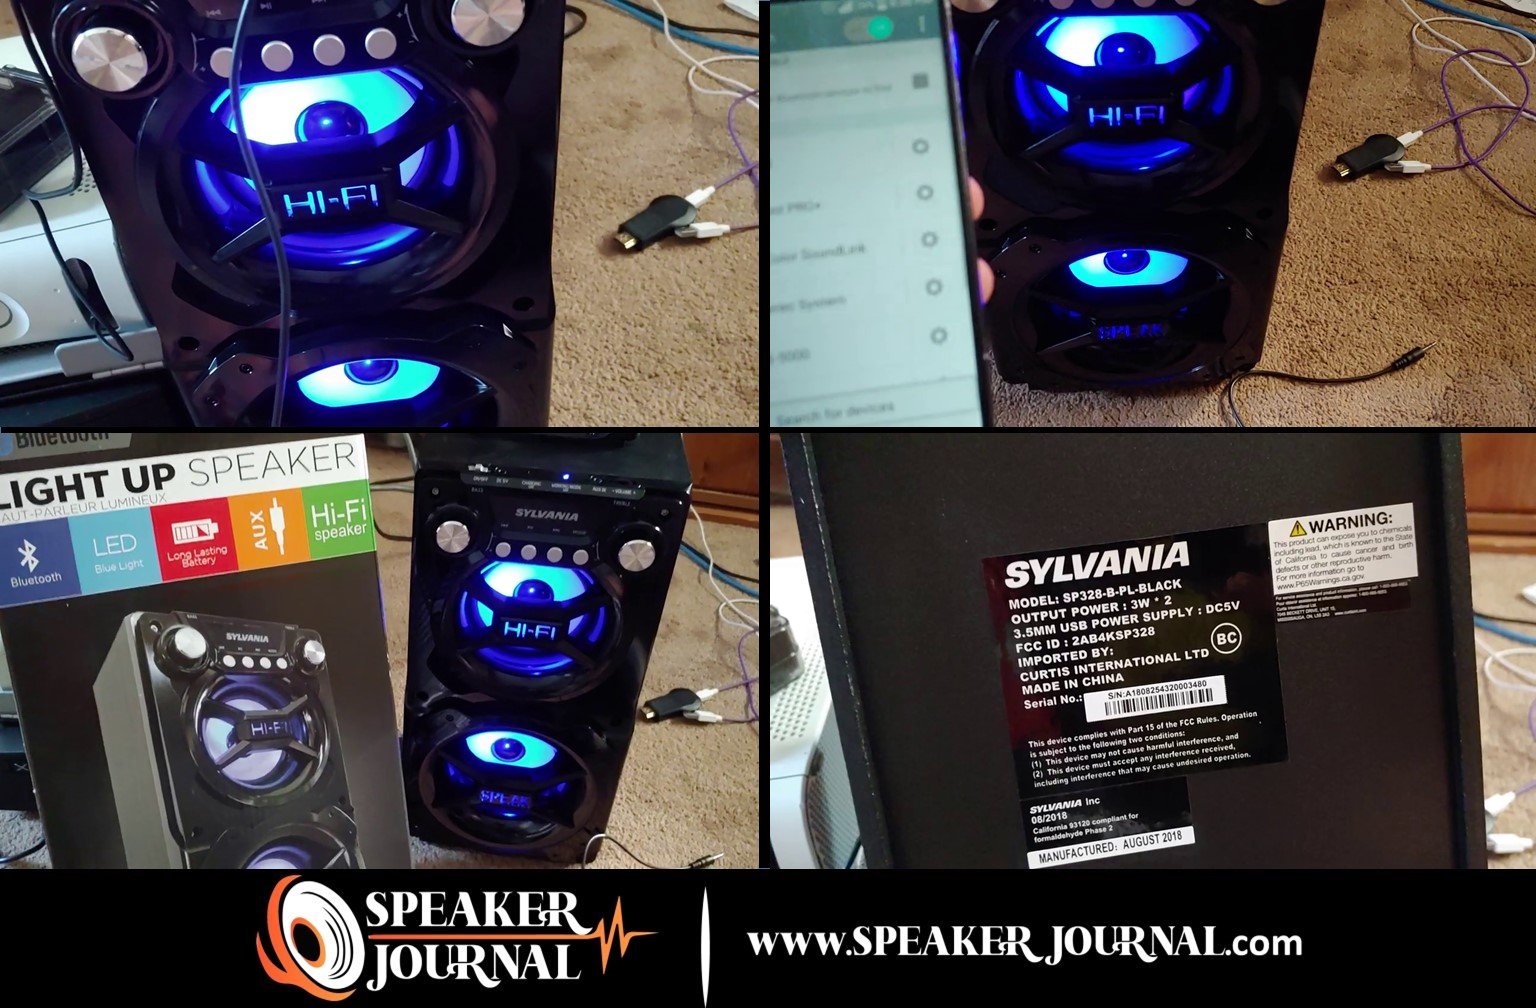 Sylvania Bluetooth Speakers SP328